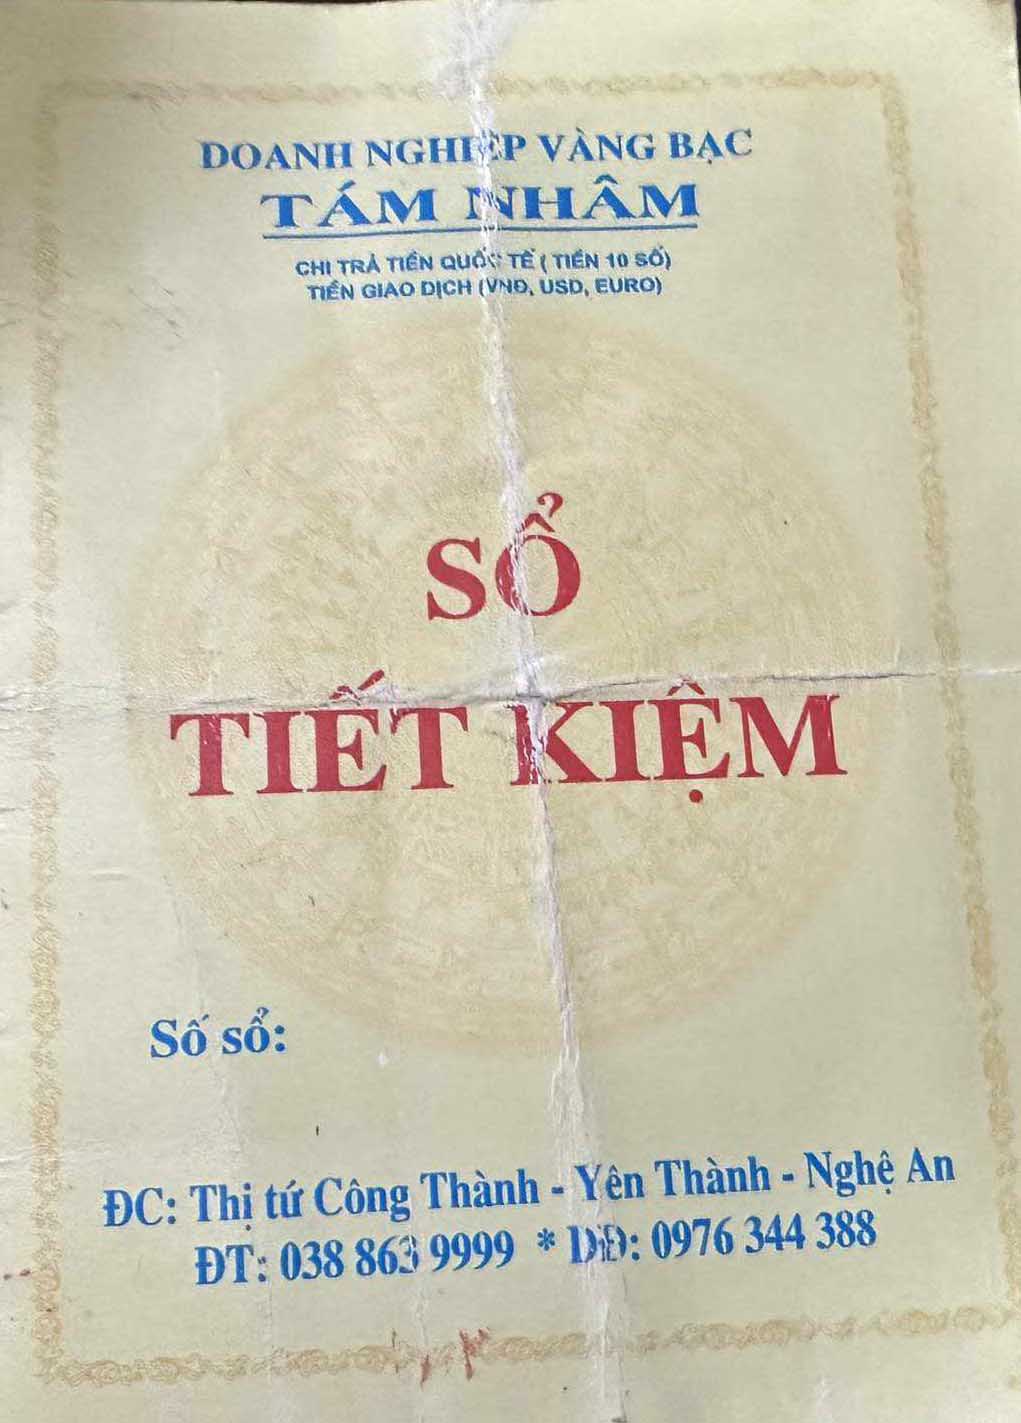 Doanh nghiệp tư nhân Tám Nhâm tự in sổ tiết kiệm để huy động tiền gửi. Ảnh: Quang Đại